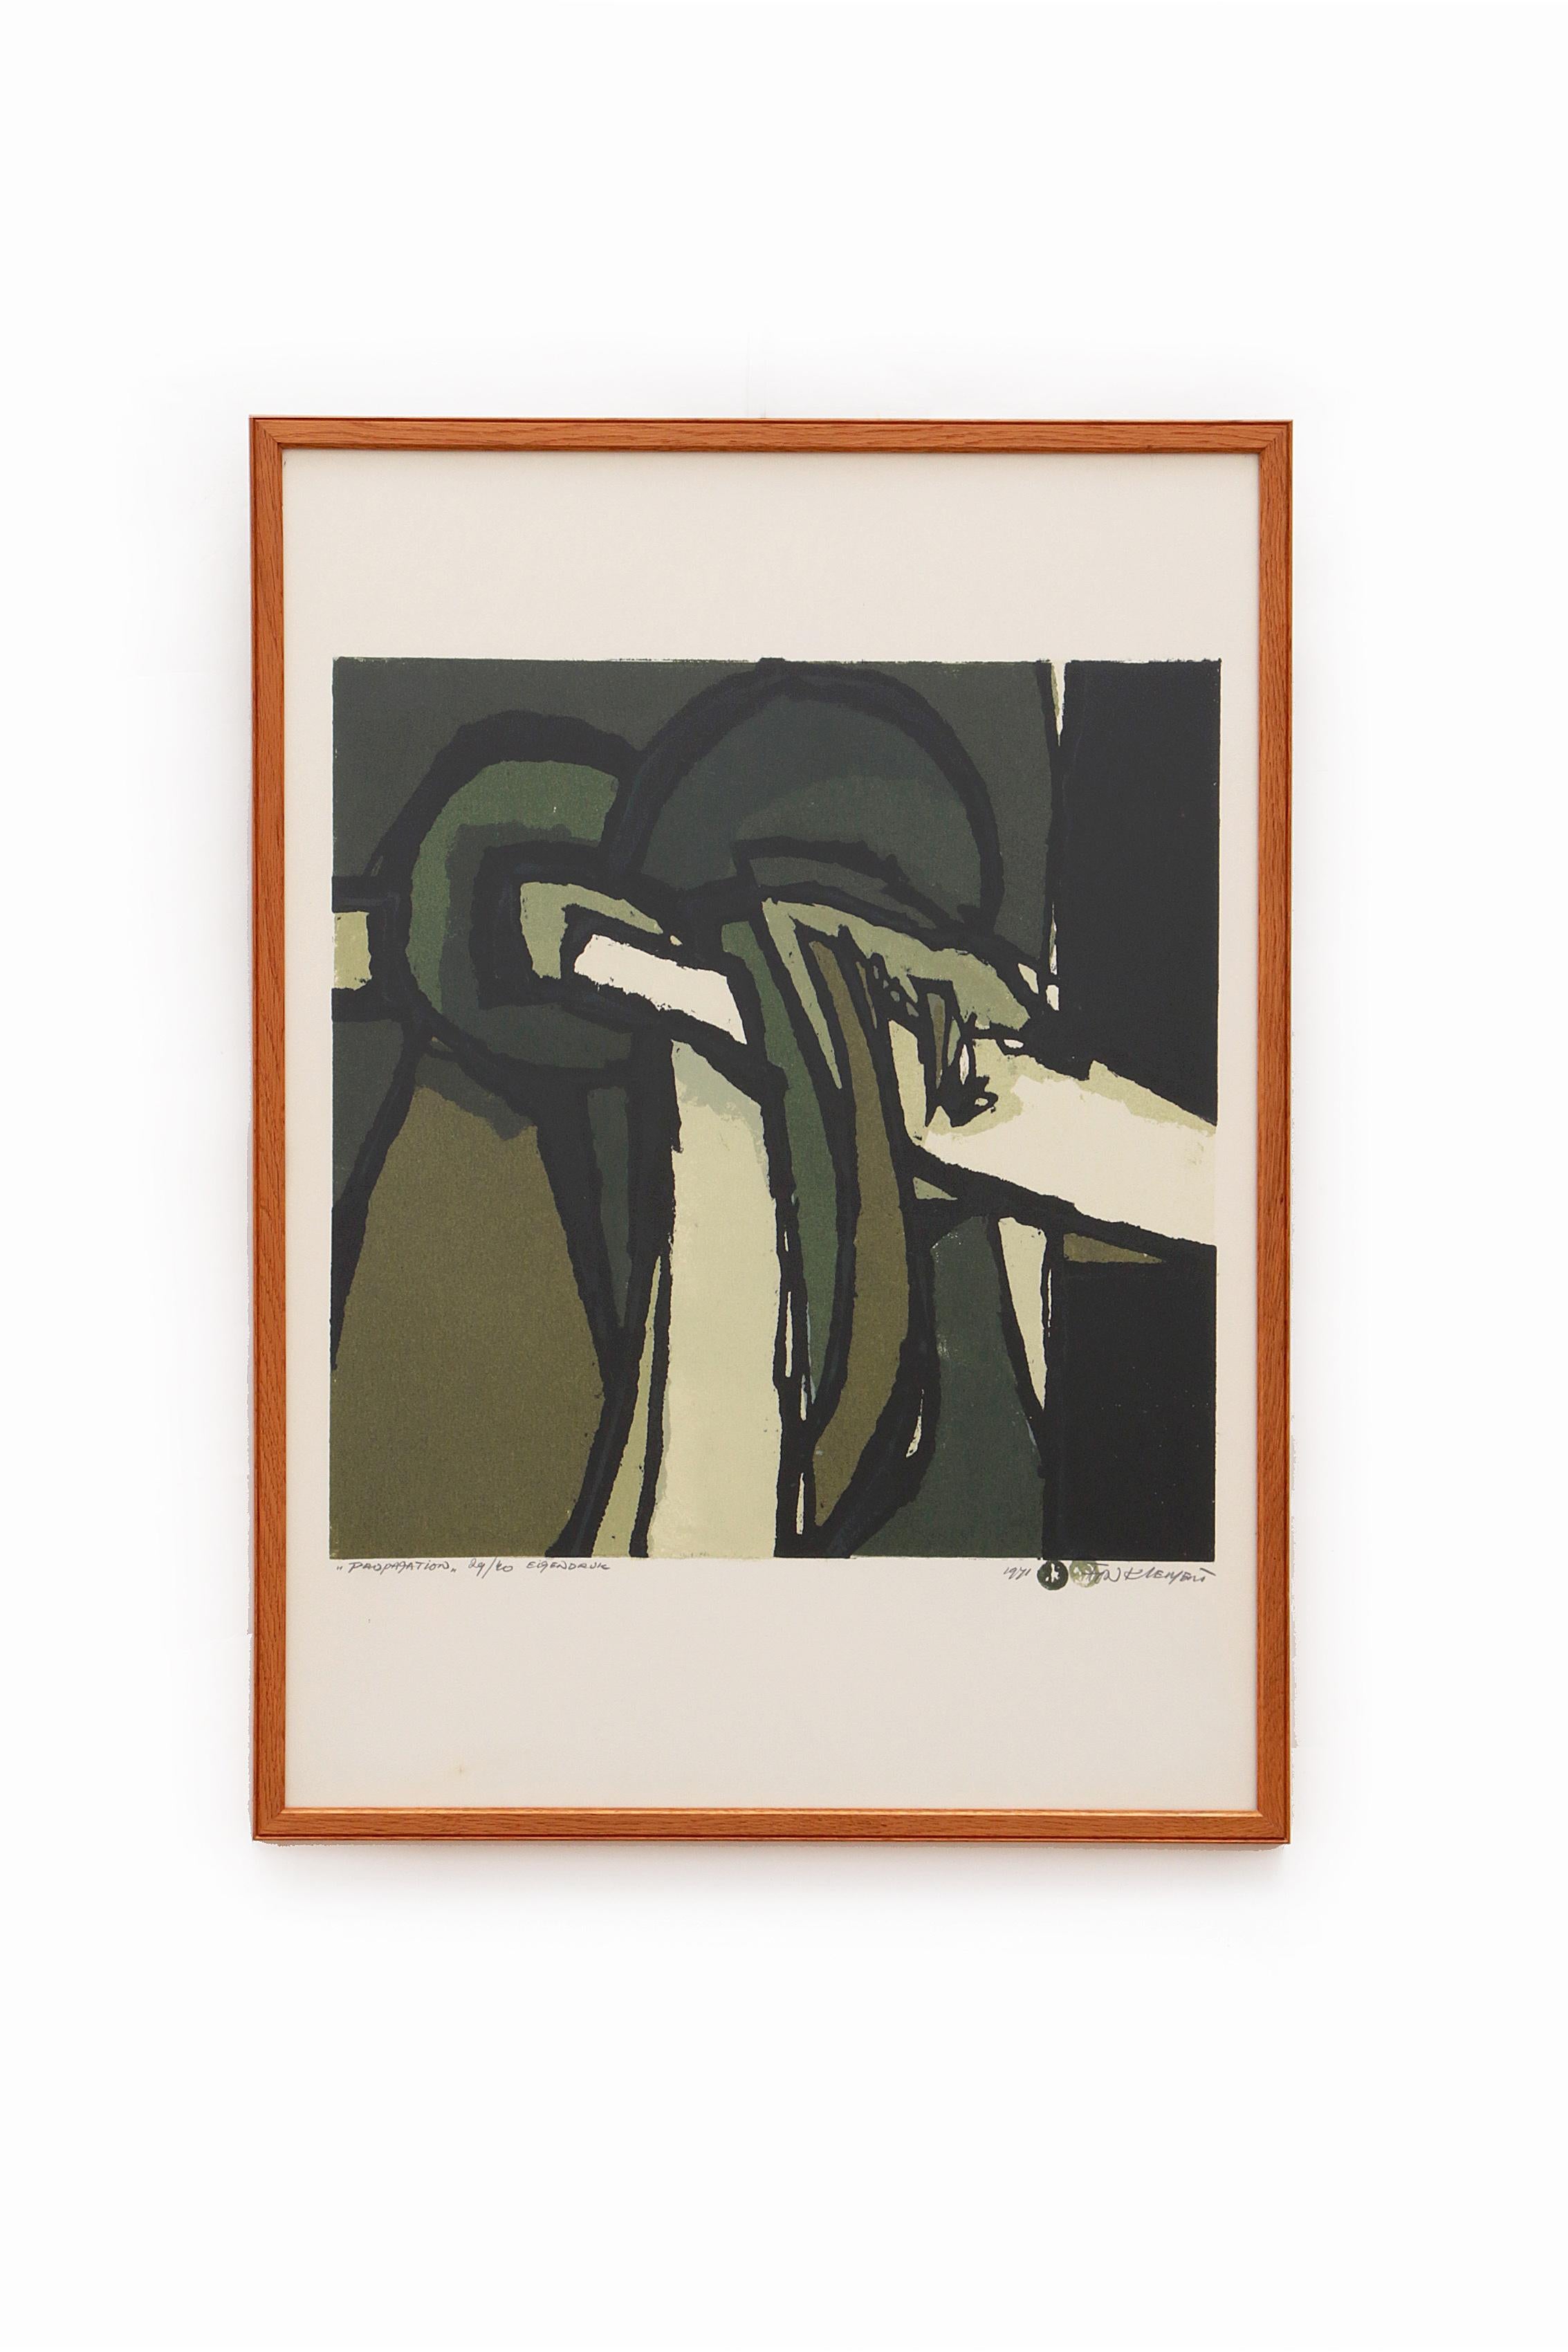 Fon Klement (1930-2000) „Propagation“, signiert mit 29/40 eigenen Druck, 1971

Entdecken Sie die Welt von Fon Klement und seinen abstrakten Graphikblättern

Fon Klement ist ein Synonym für einzigartige und ausdrucksstarke Kunst und hat die Welt der